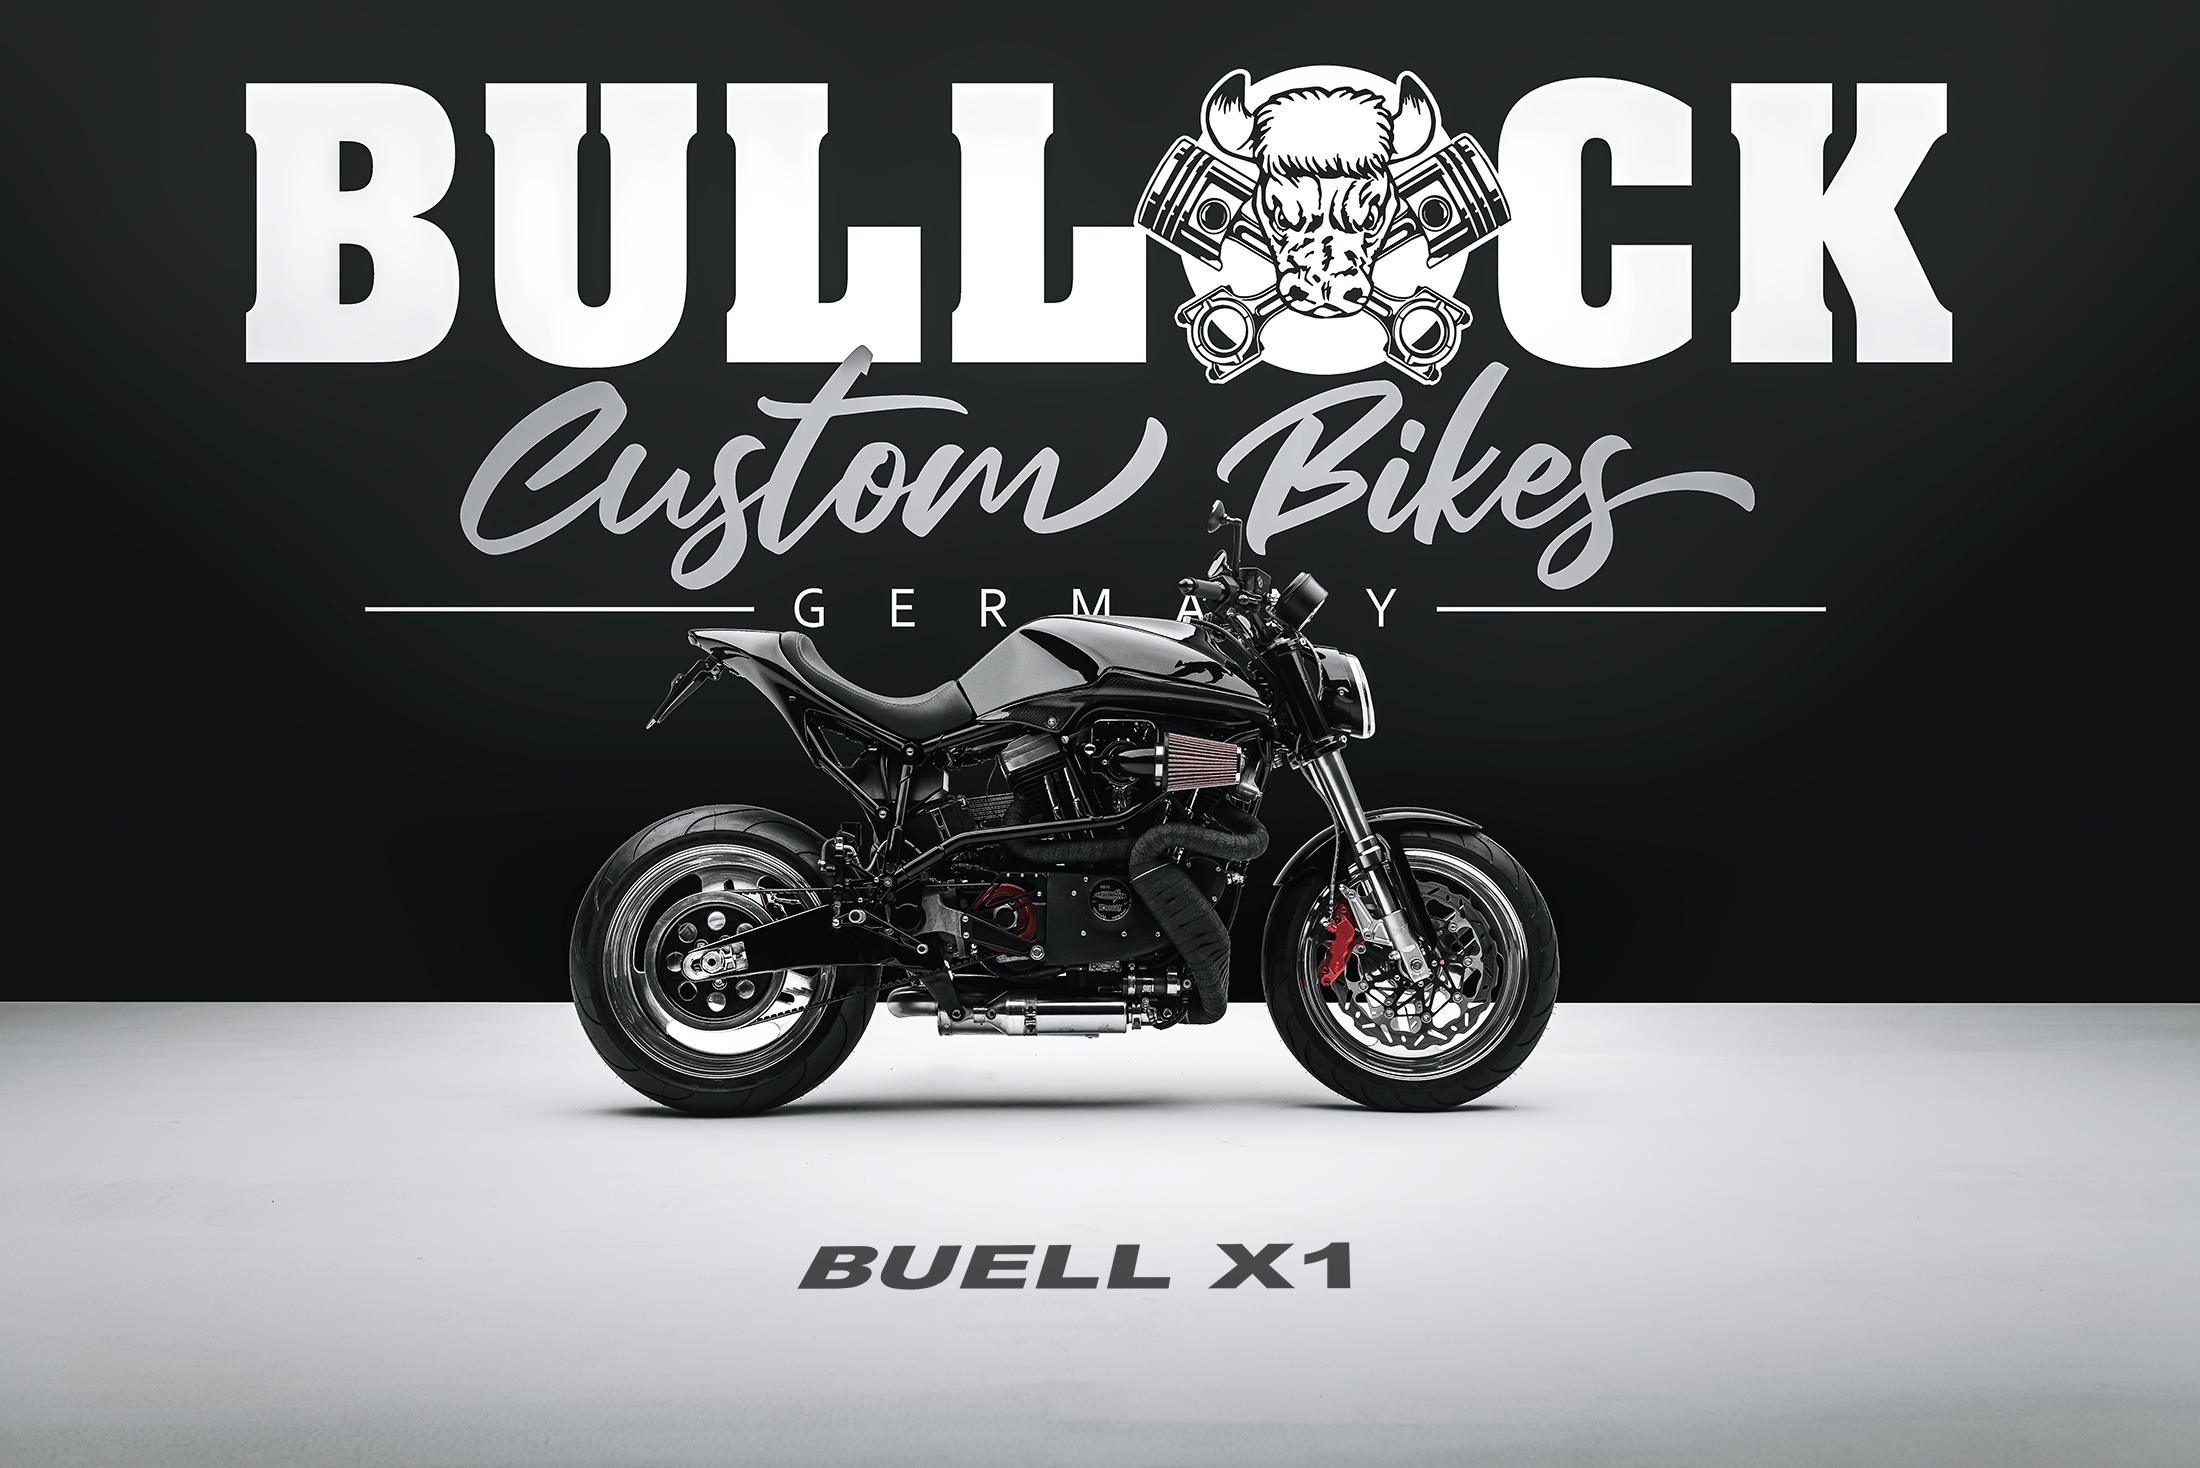 Bullock Custom Bikes Harley Davidson Slim